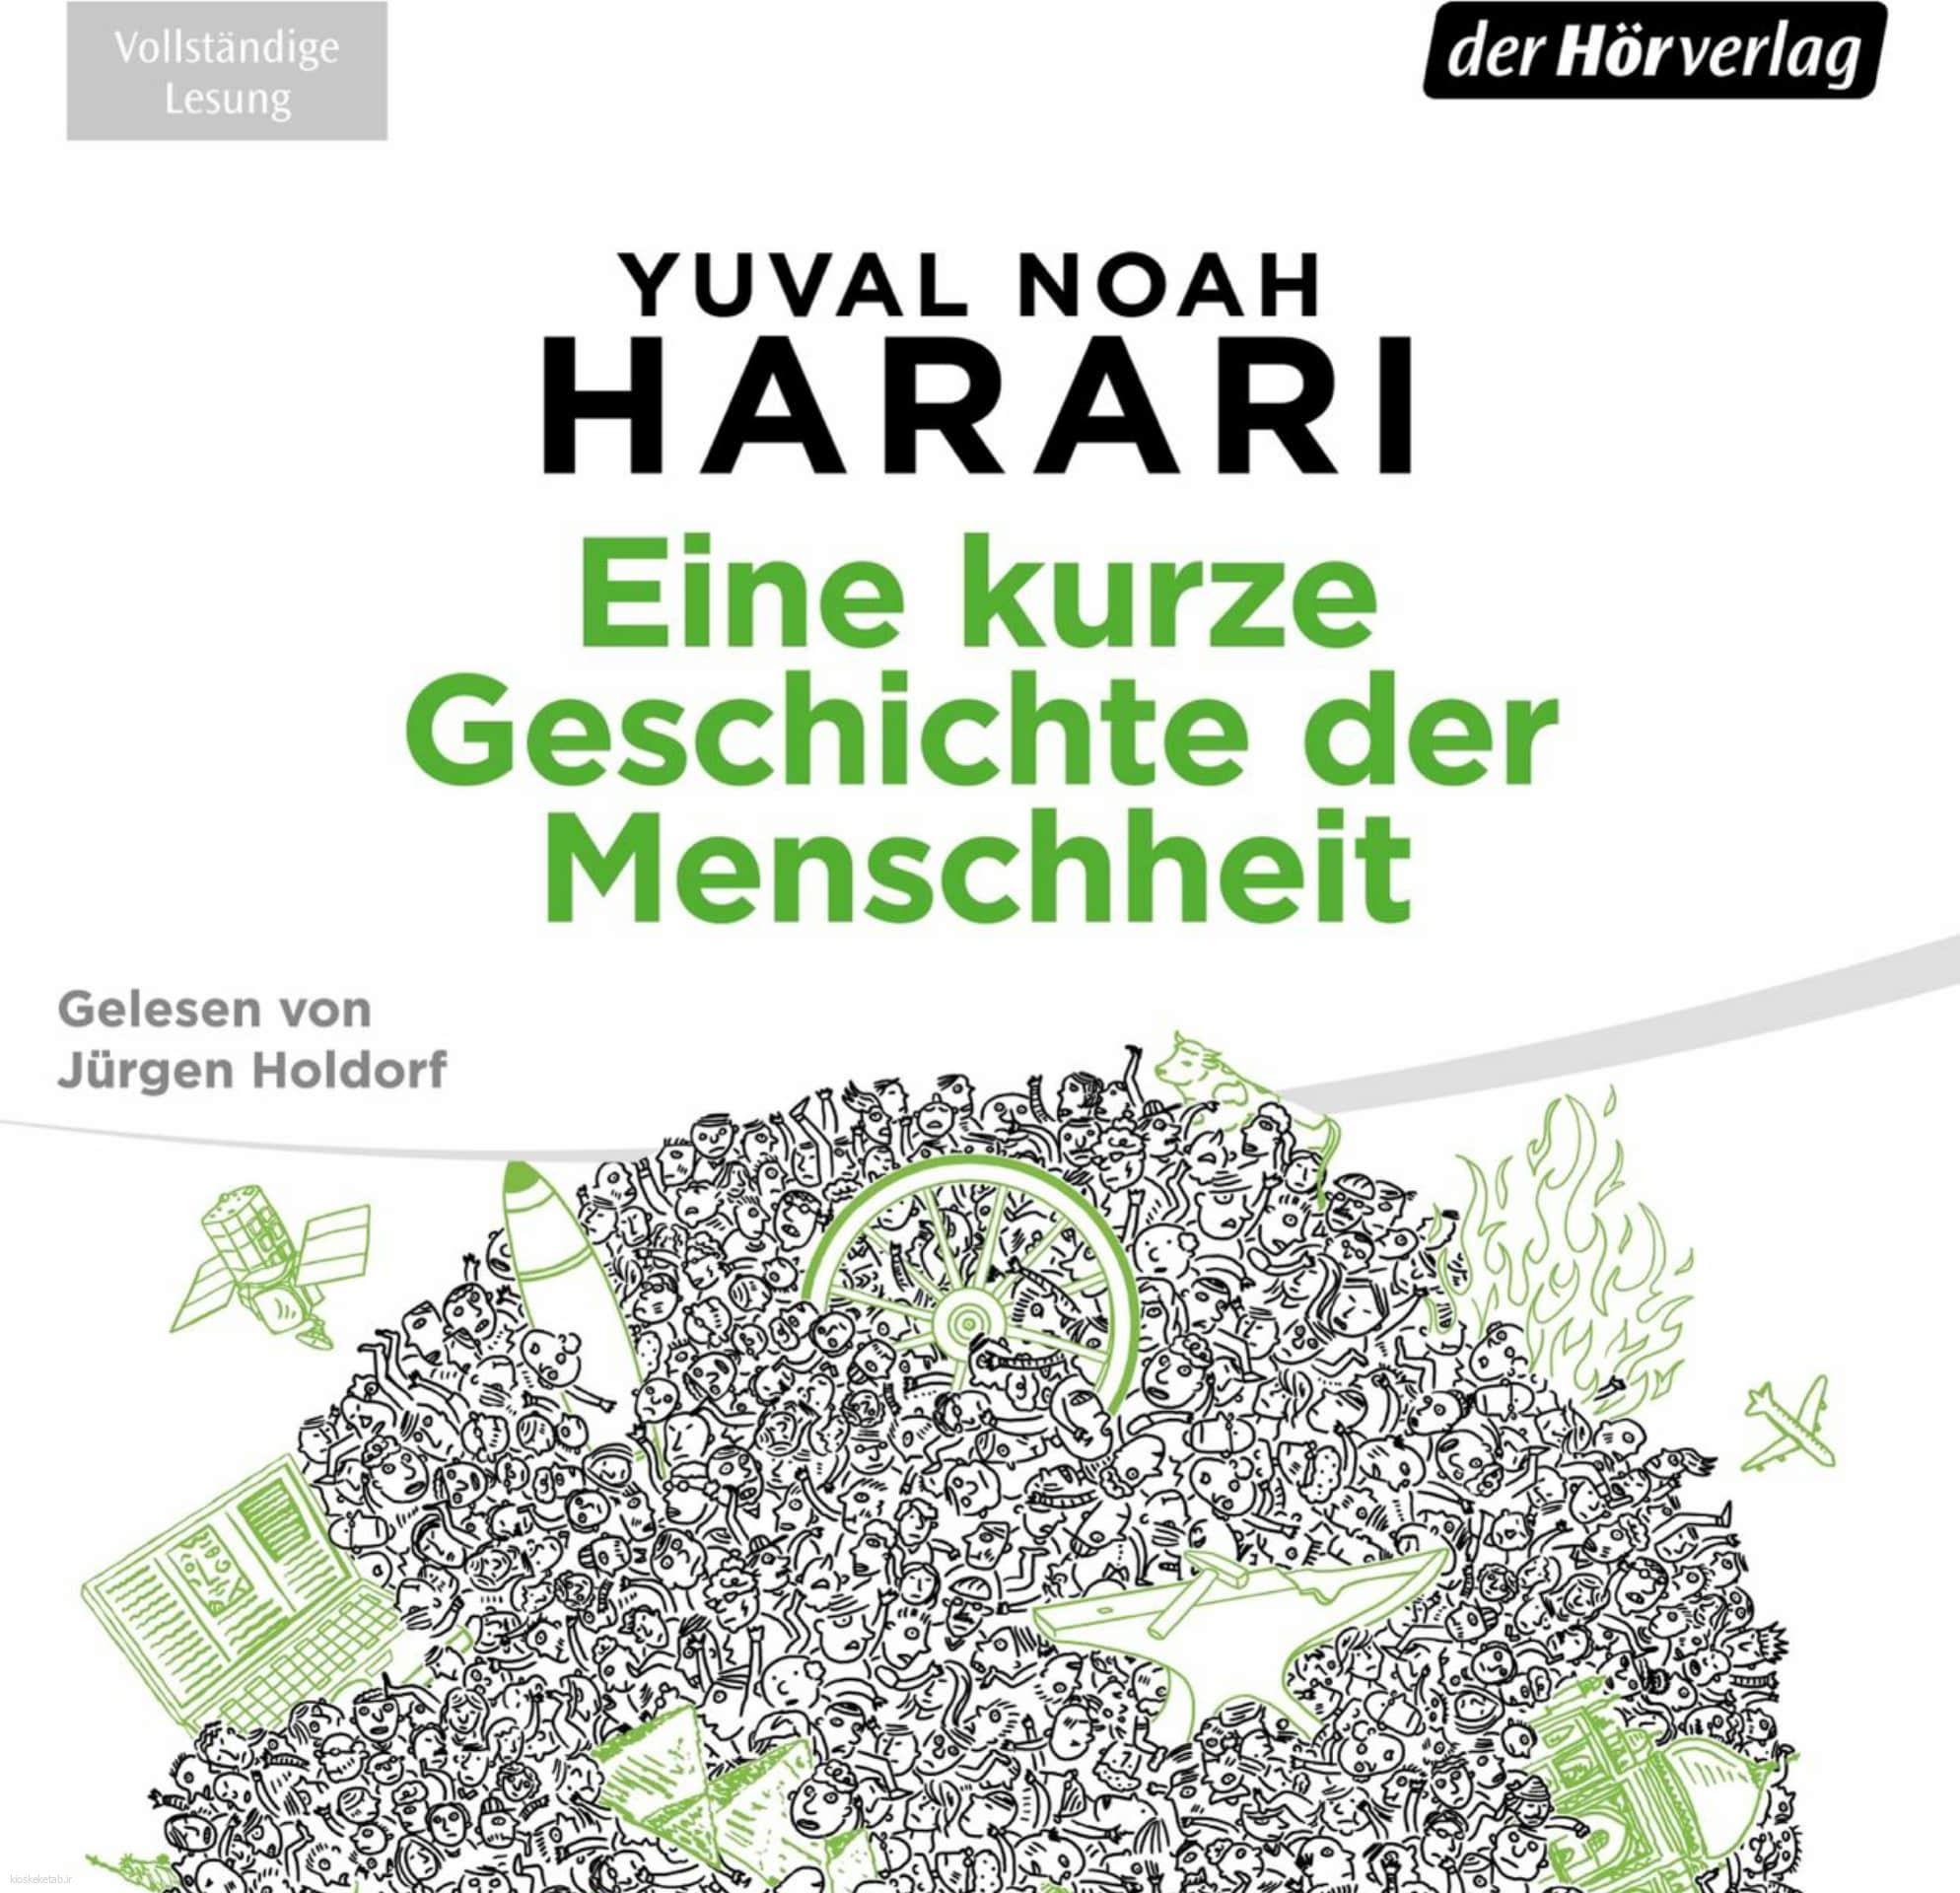 دانلود کتاب آلمانی harari eine kurze